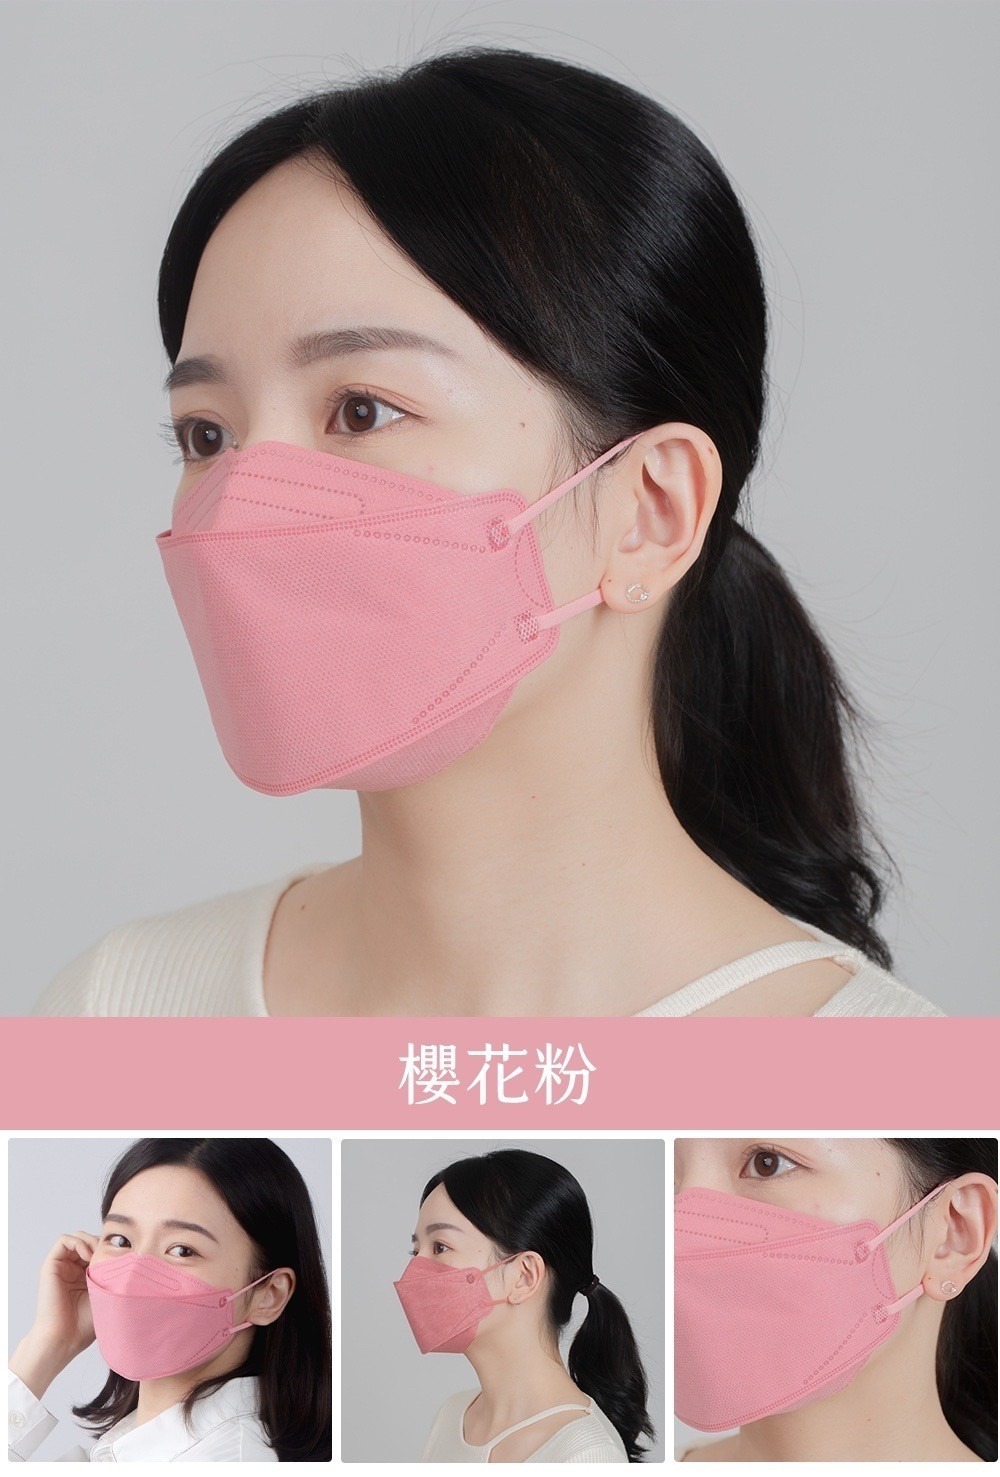 詠達立體醫用防護口罩(單包裝20入)-櫻花粉